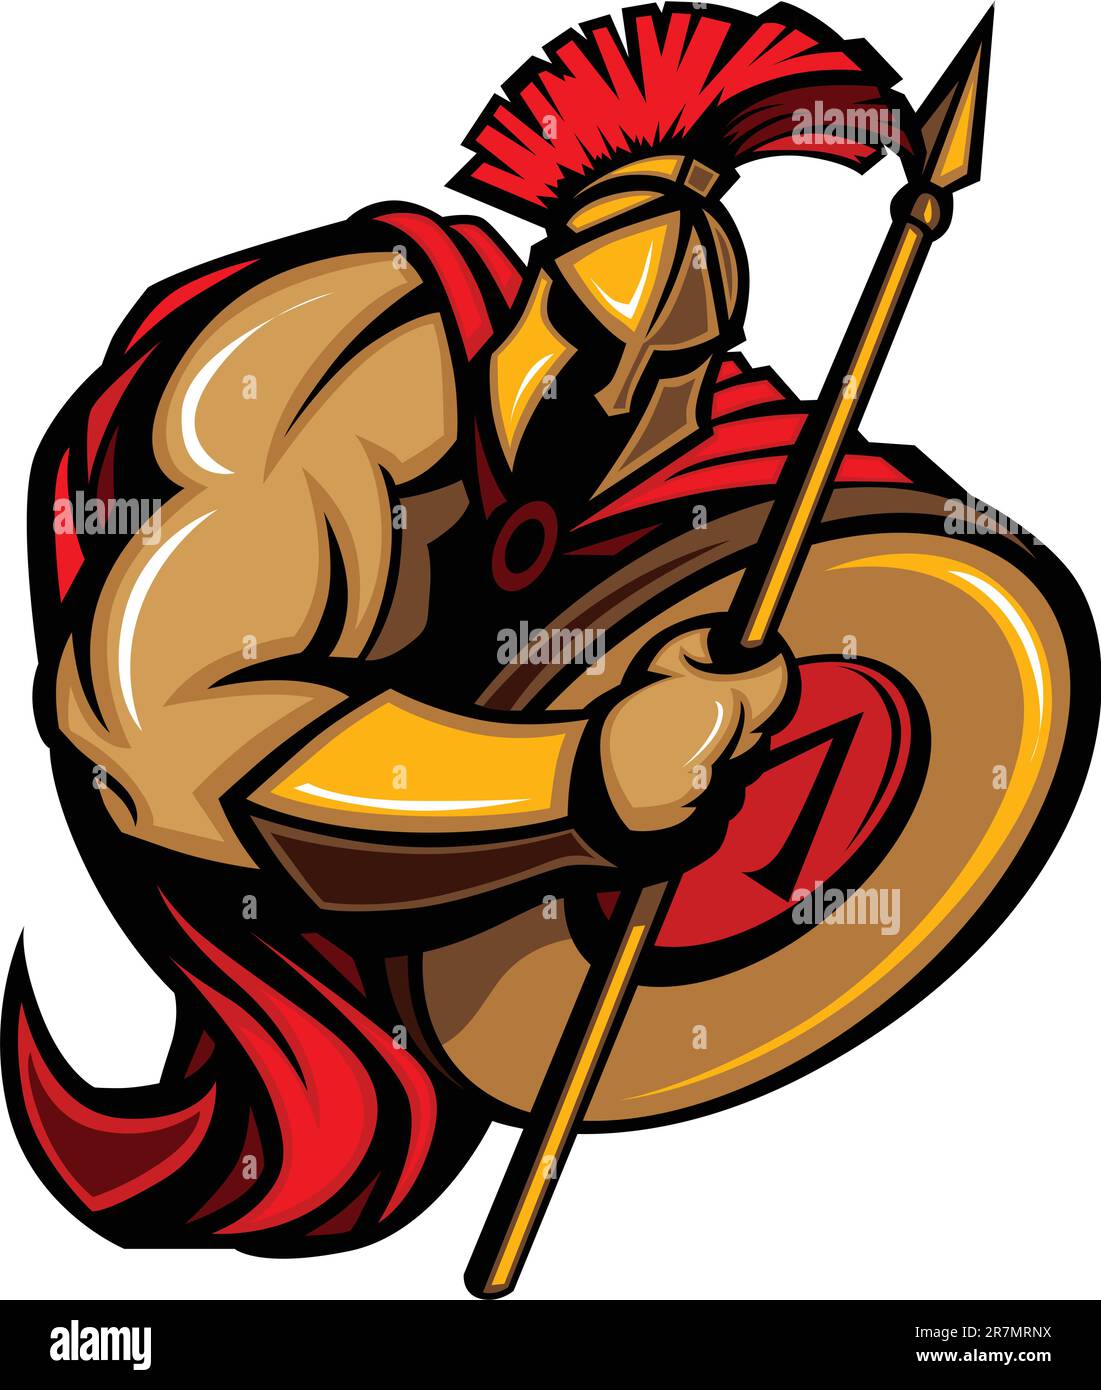 Dessin animé graphique d'une mascotte grecque de Spartan ou de cheval de Troie tenant un bouclier et une lance Illustration de Vecteur